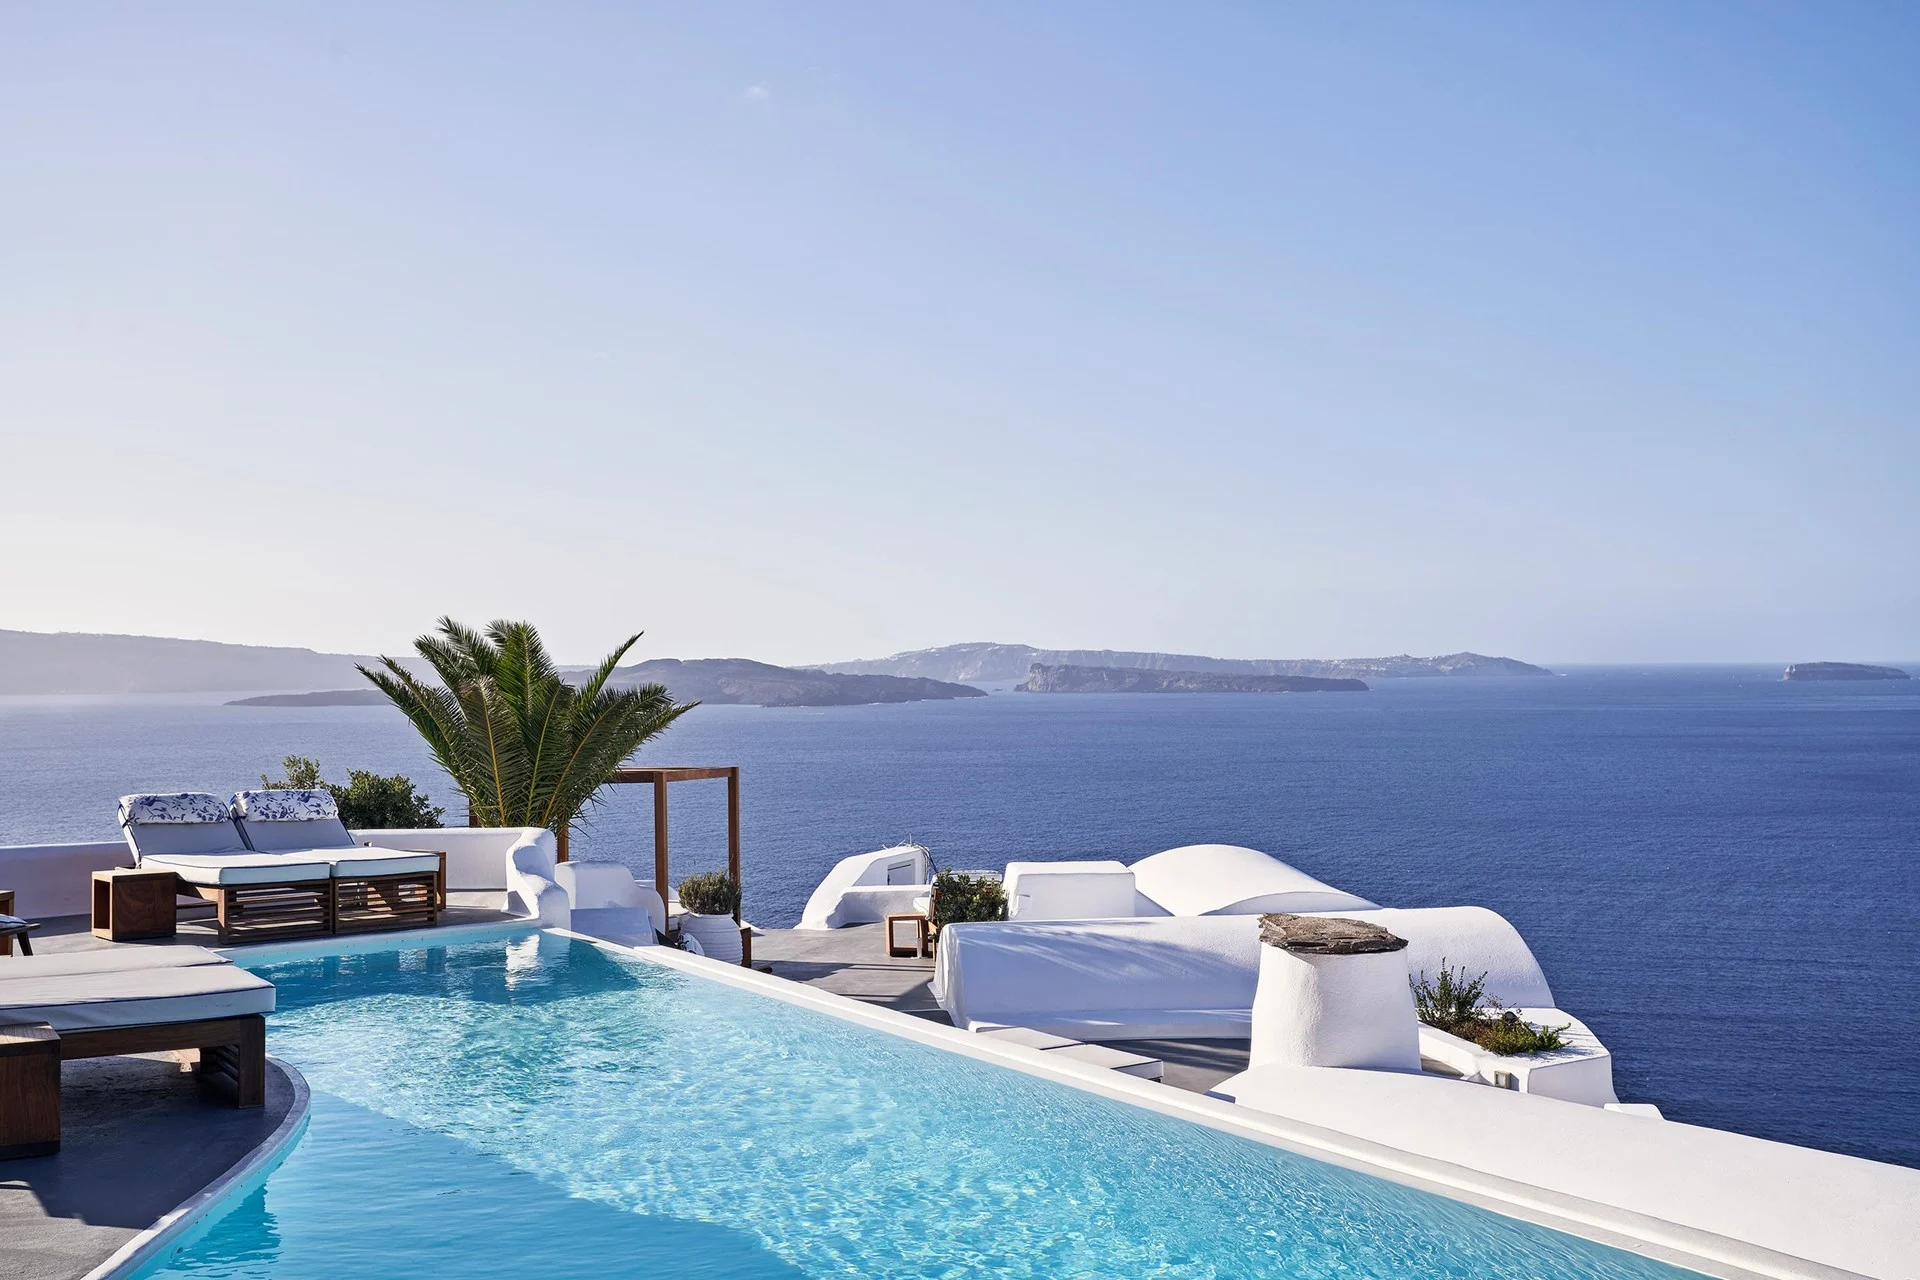 Αυτό ψηφίστηκε ως το καλύτερο ελληνικό ξενοδοχείο της χρονιάς